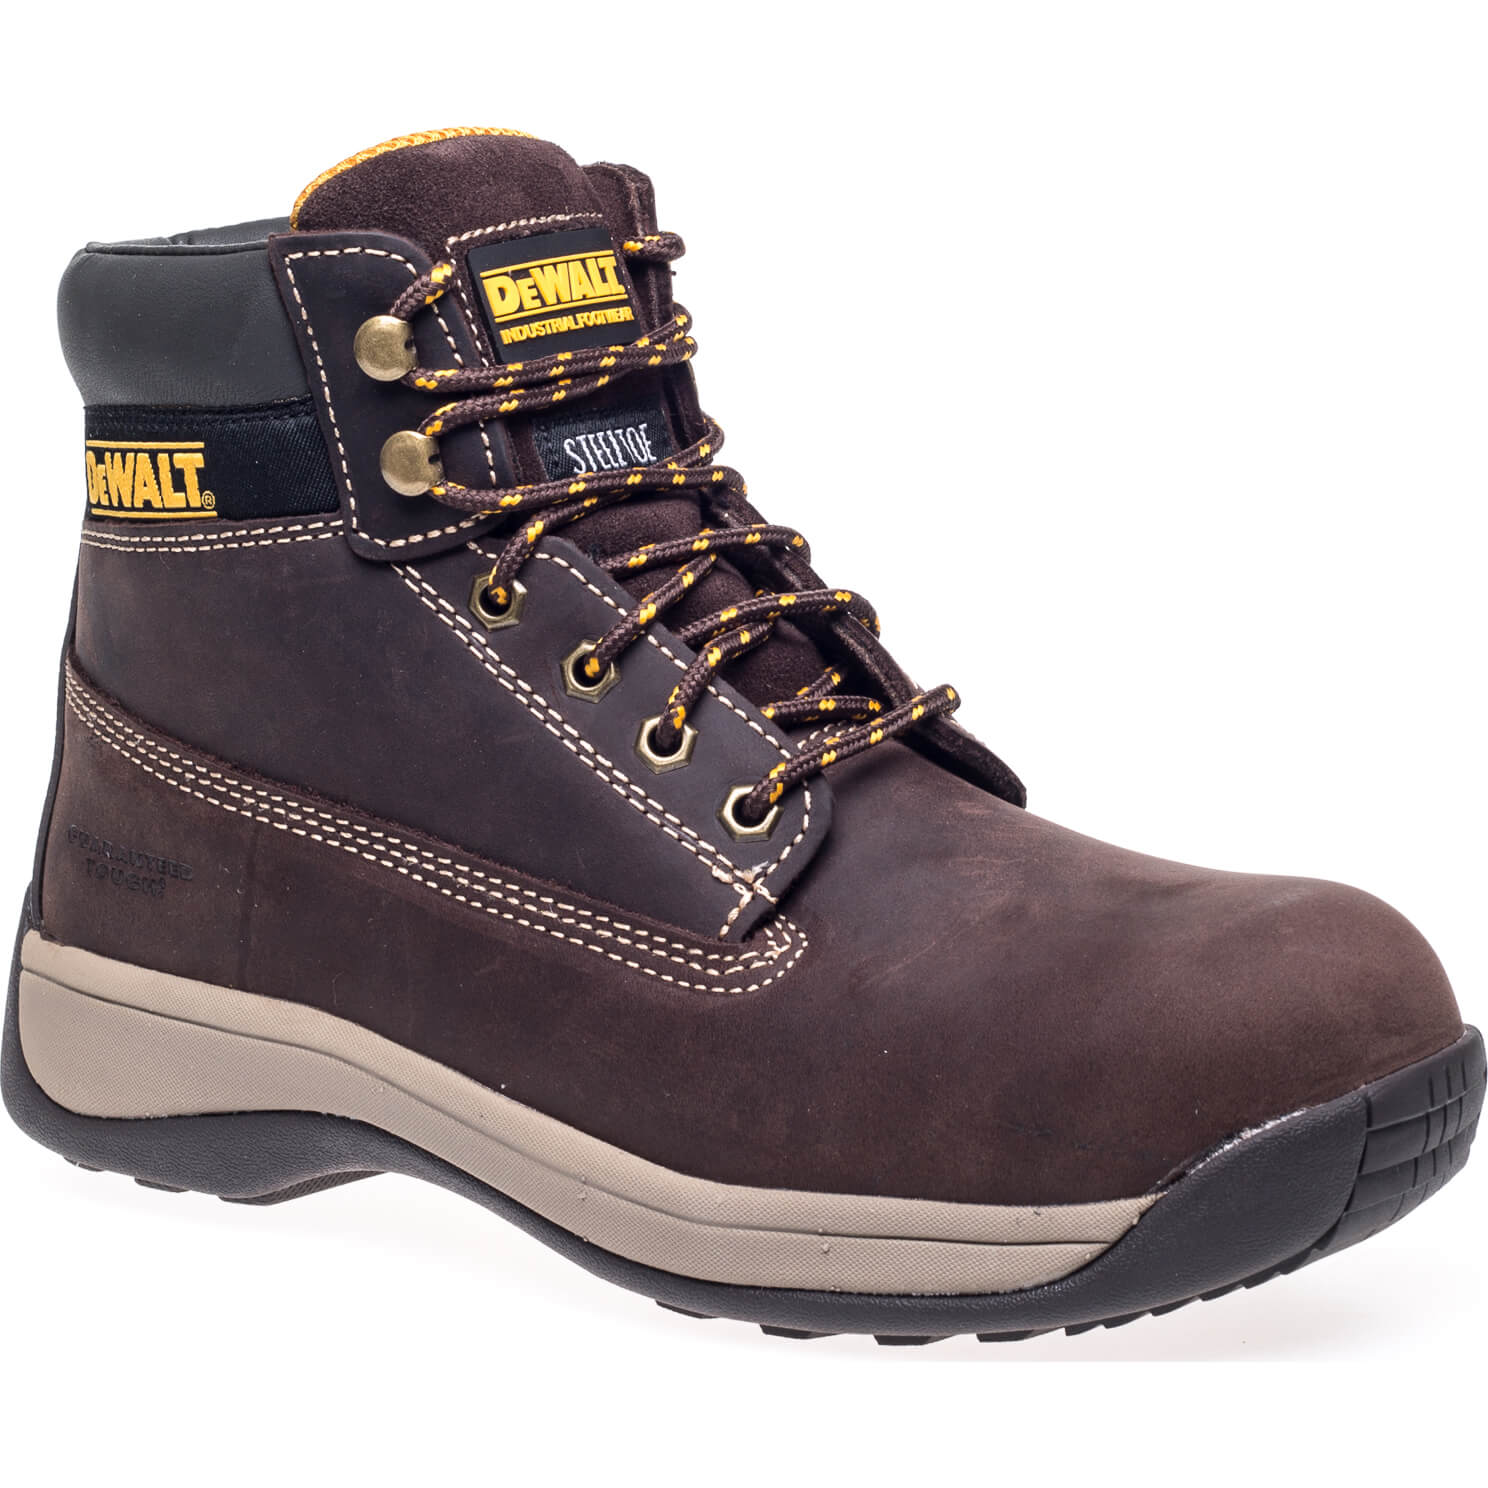 Image of DeWalt Apprentice Nubuck Safety Hiker Boots Brown Size 11